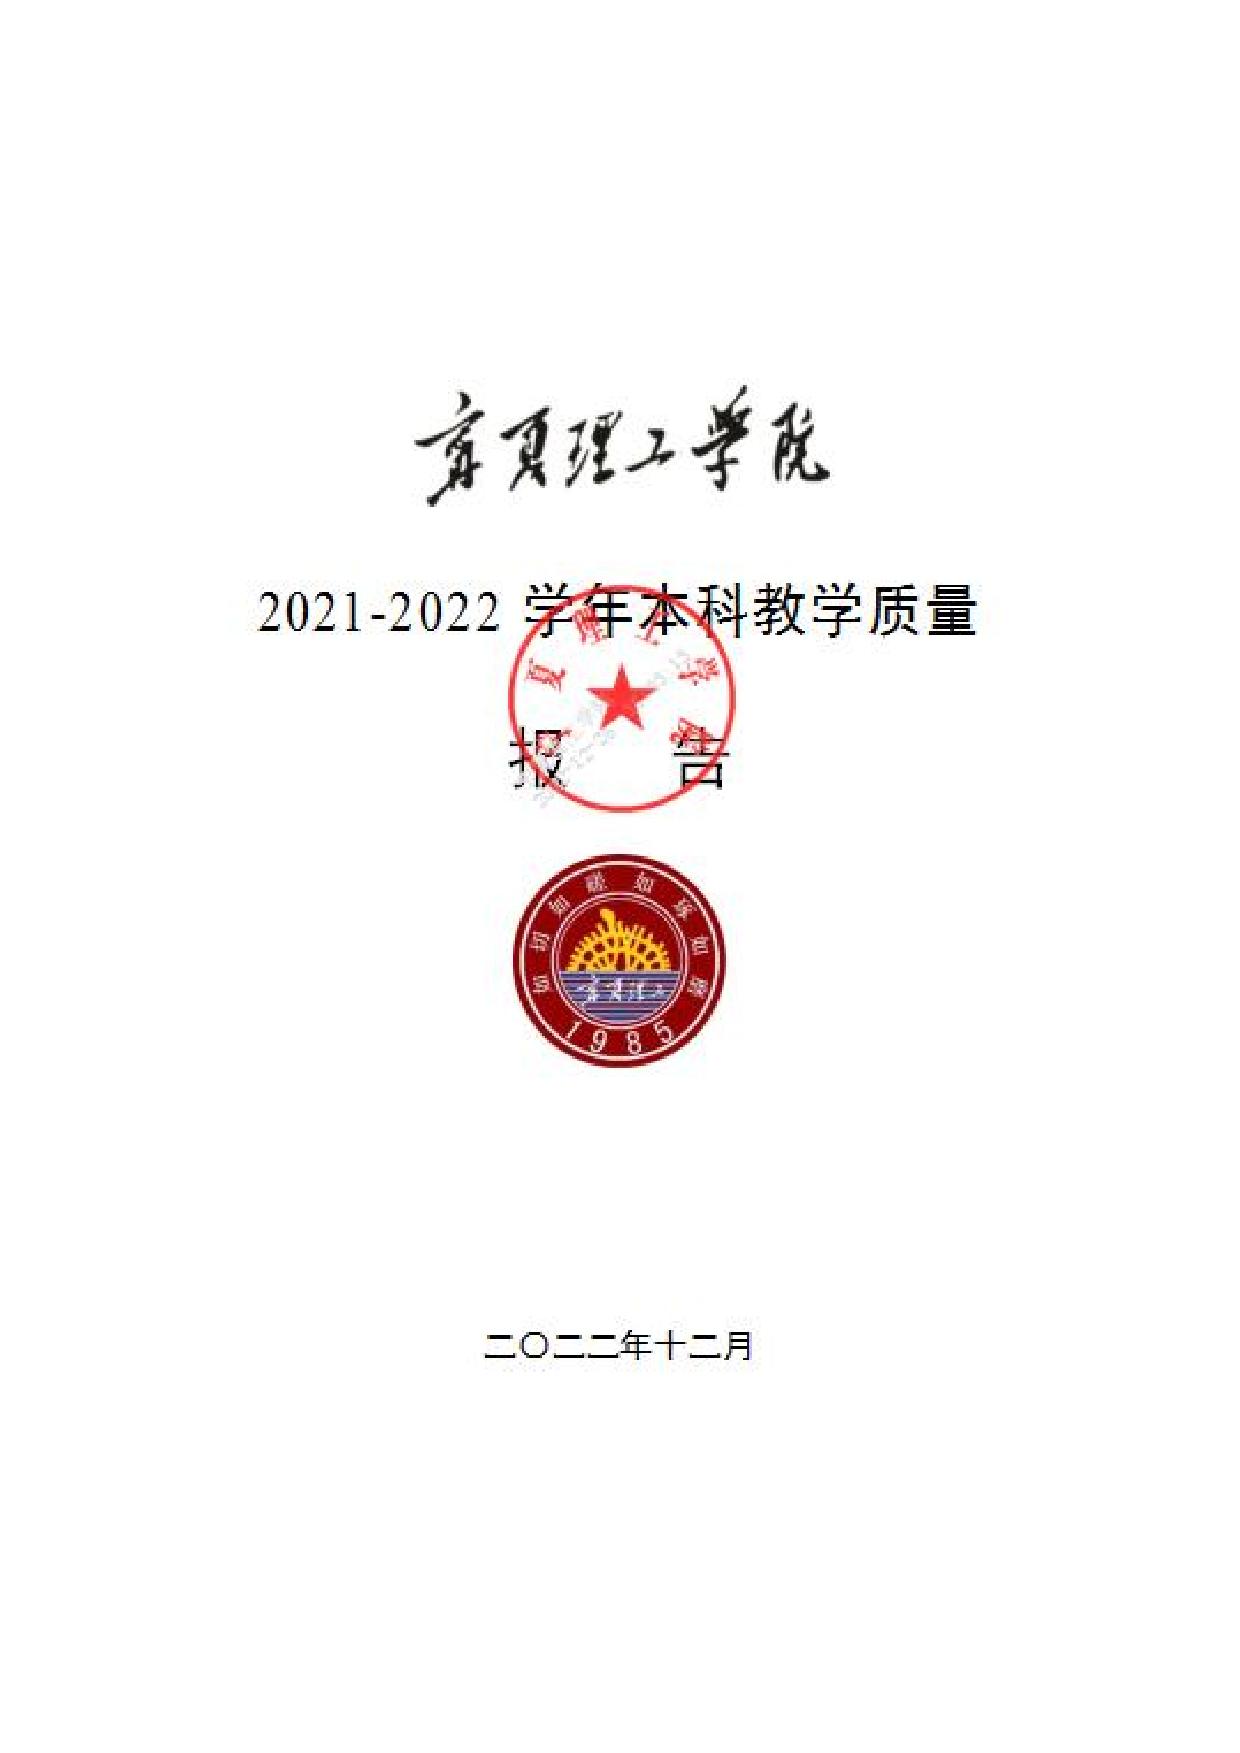 宁夏理工学院2021-2022学年本科教学质量报告-01.jpg